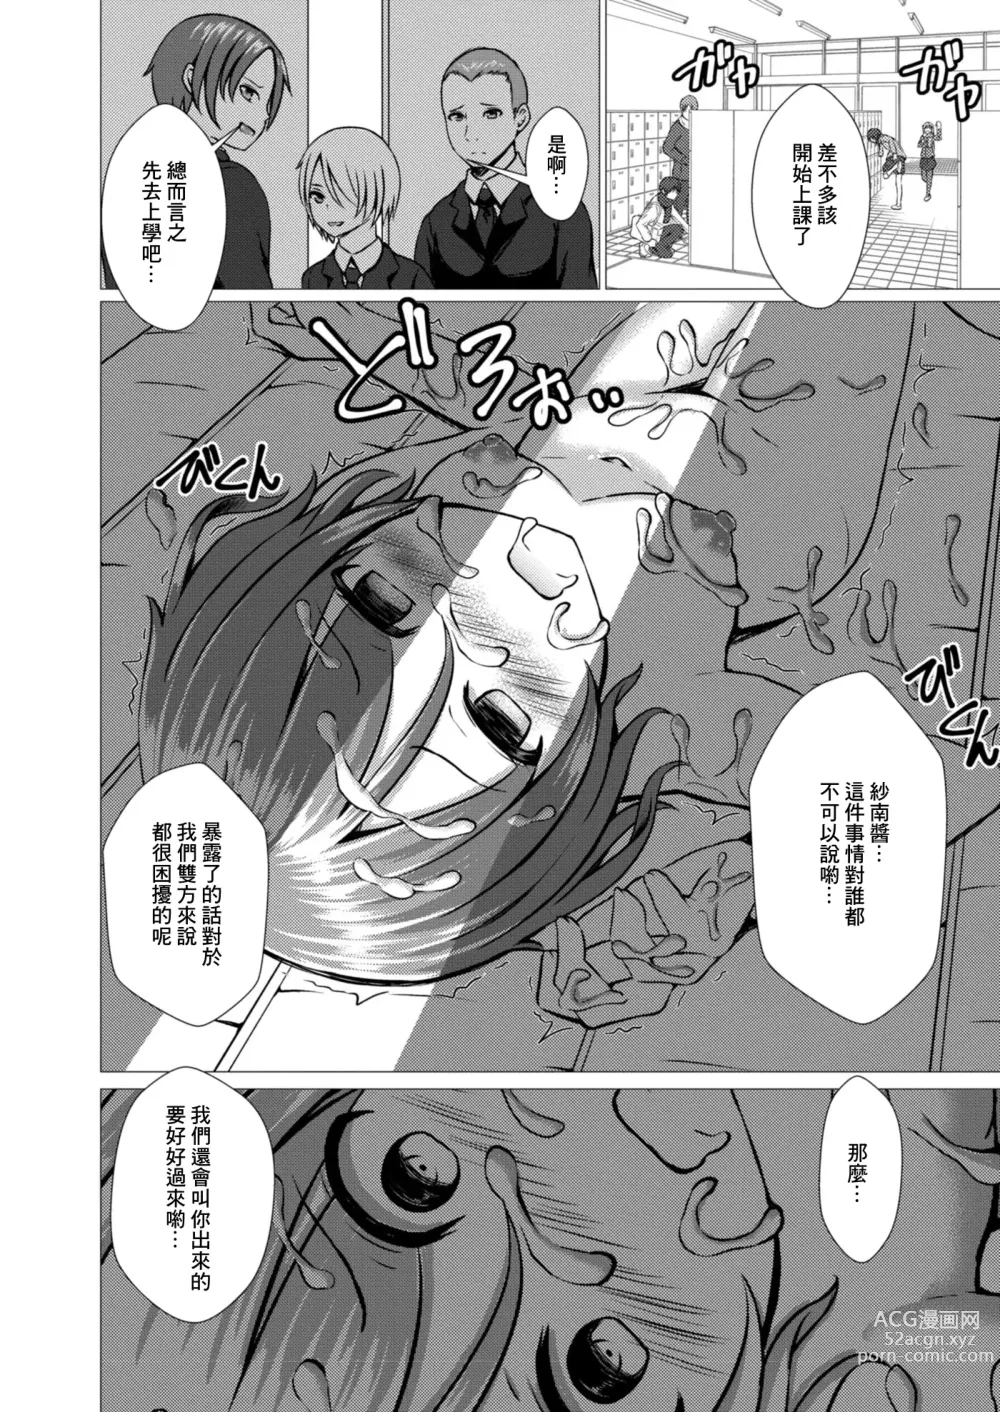 Page 24 of manga Watashi no Suki na Hito